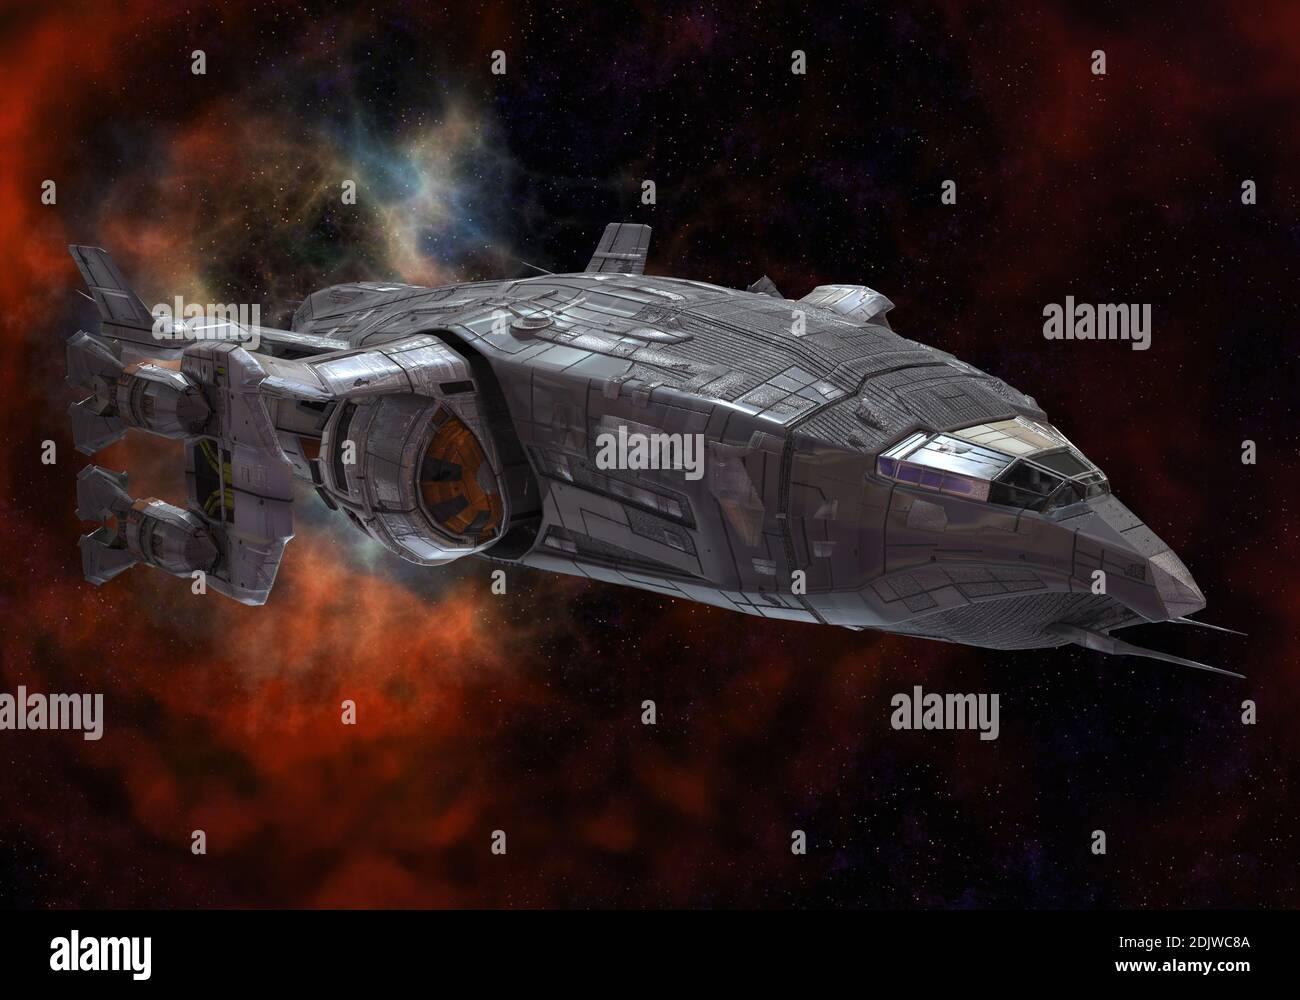 animated future spacecraft